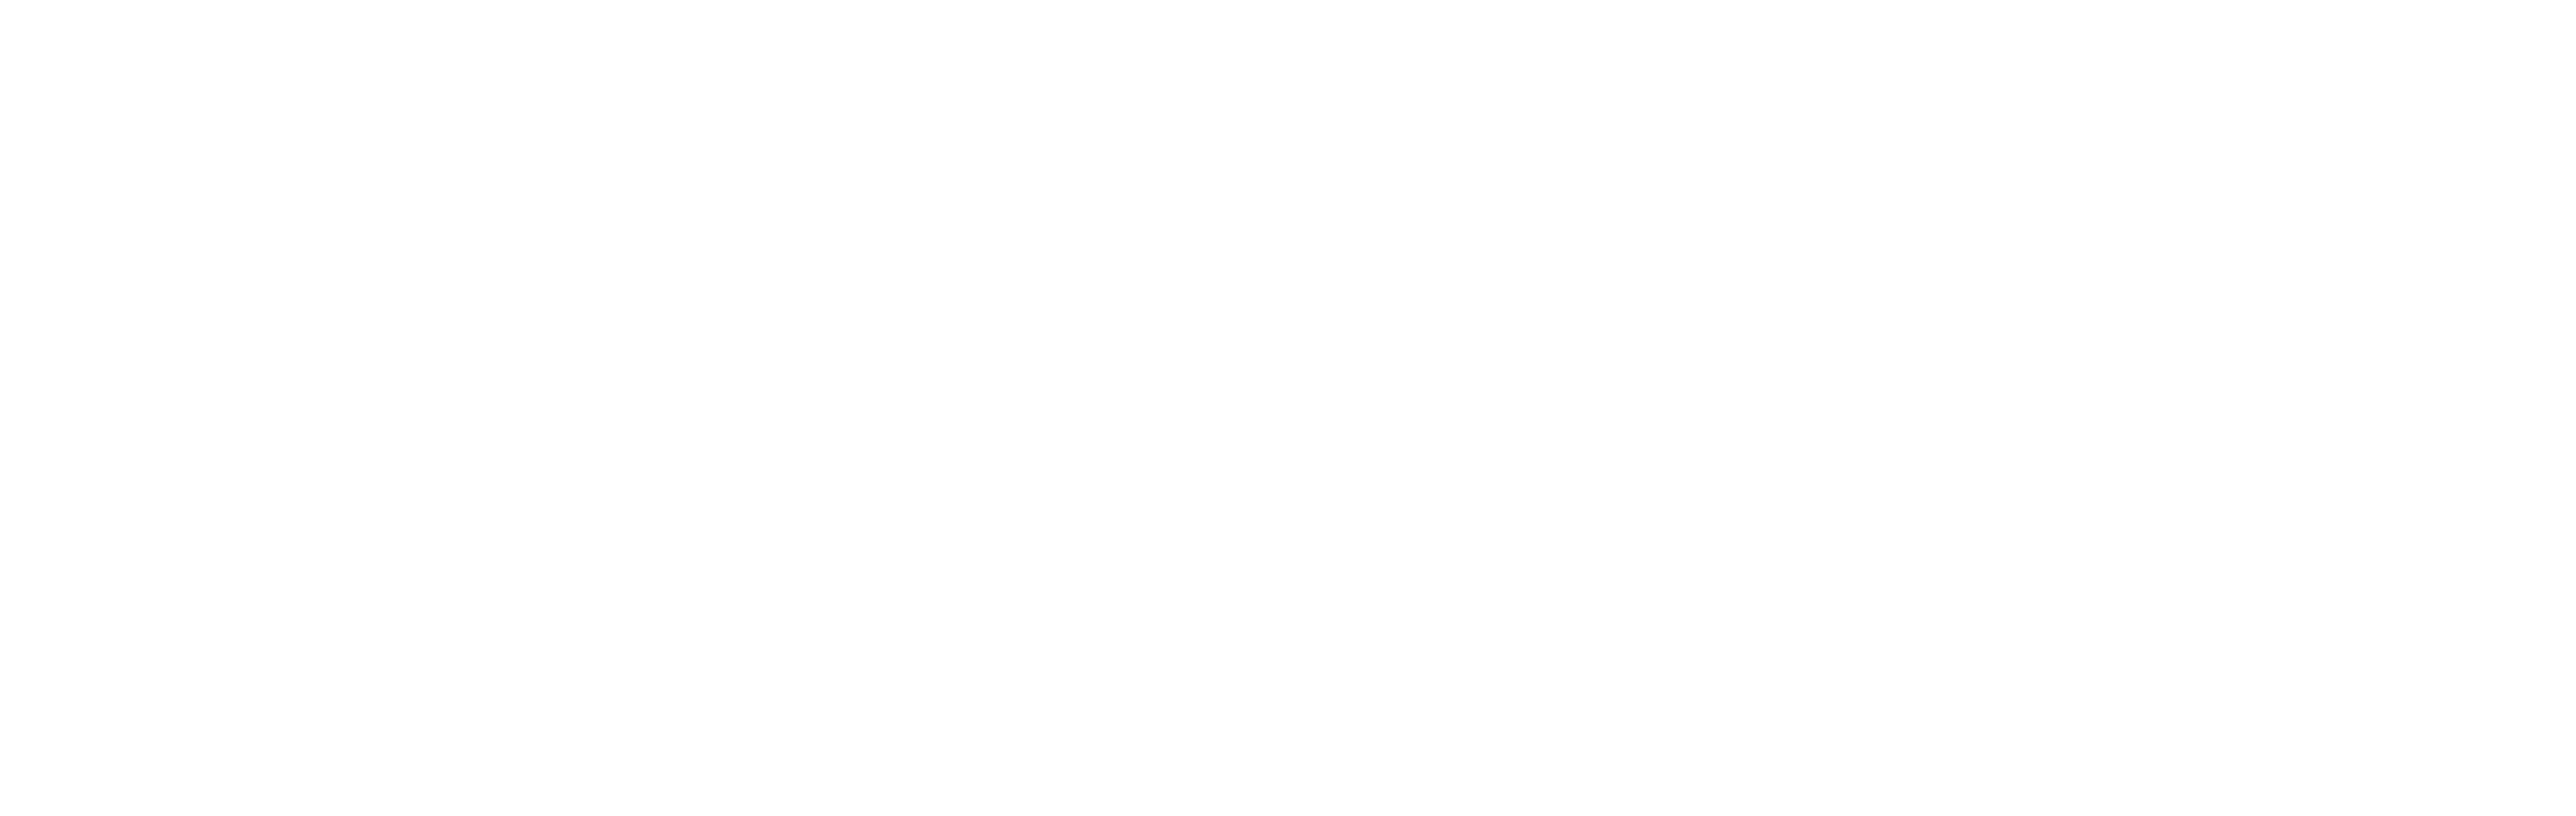 KayaNuka Logo white